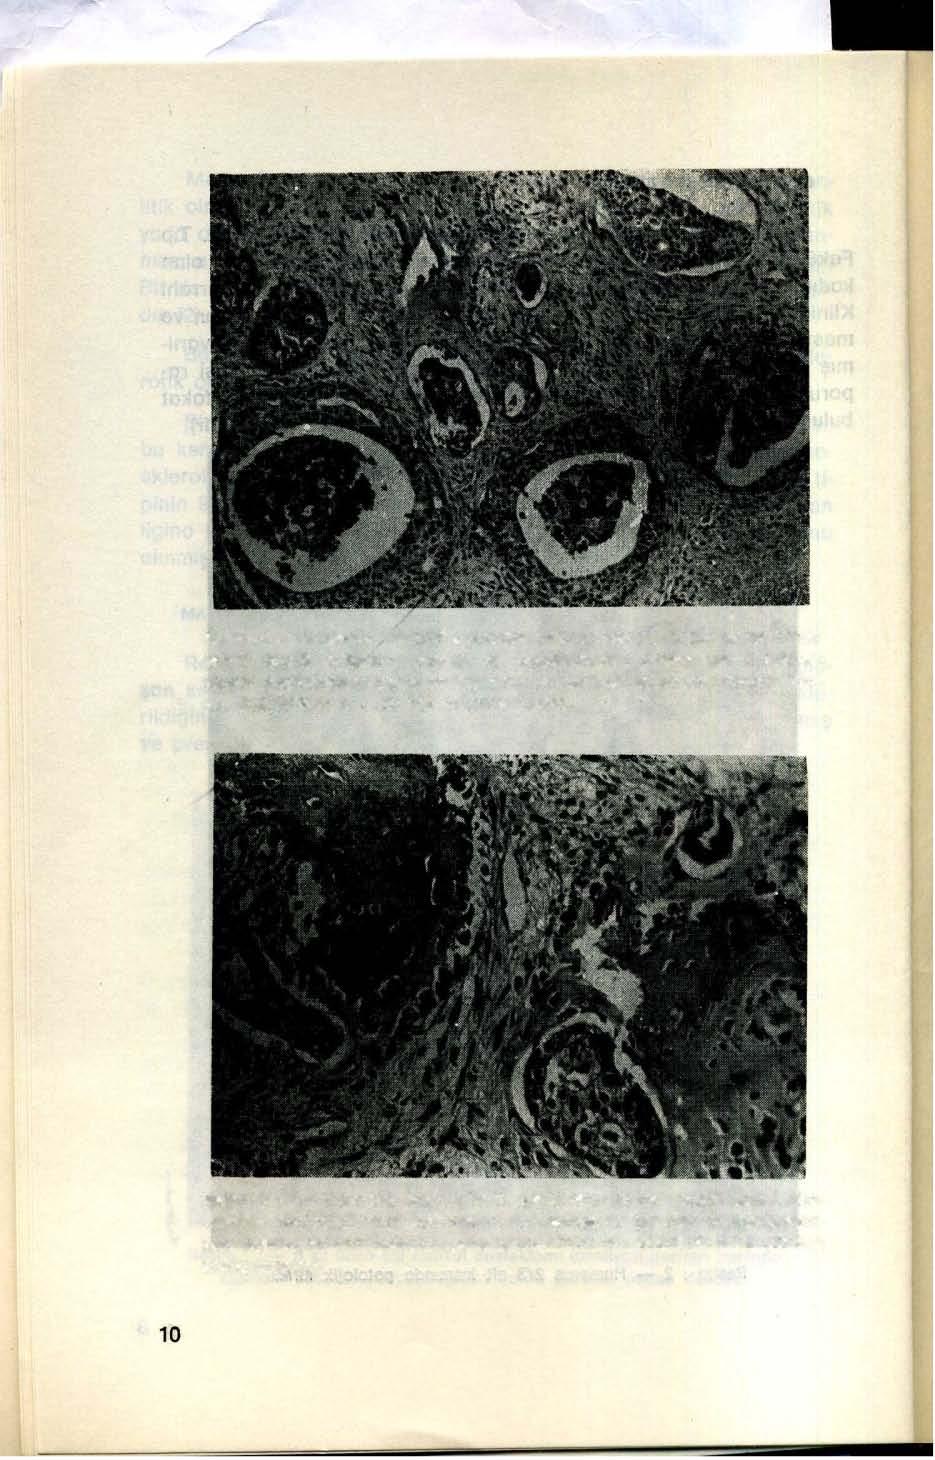 Resim: 3- Ortasında eoslnofilik granüllü nekroz.